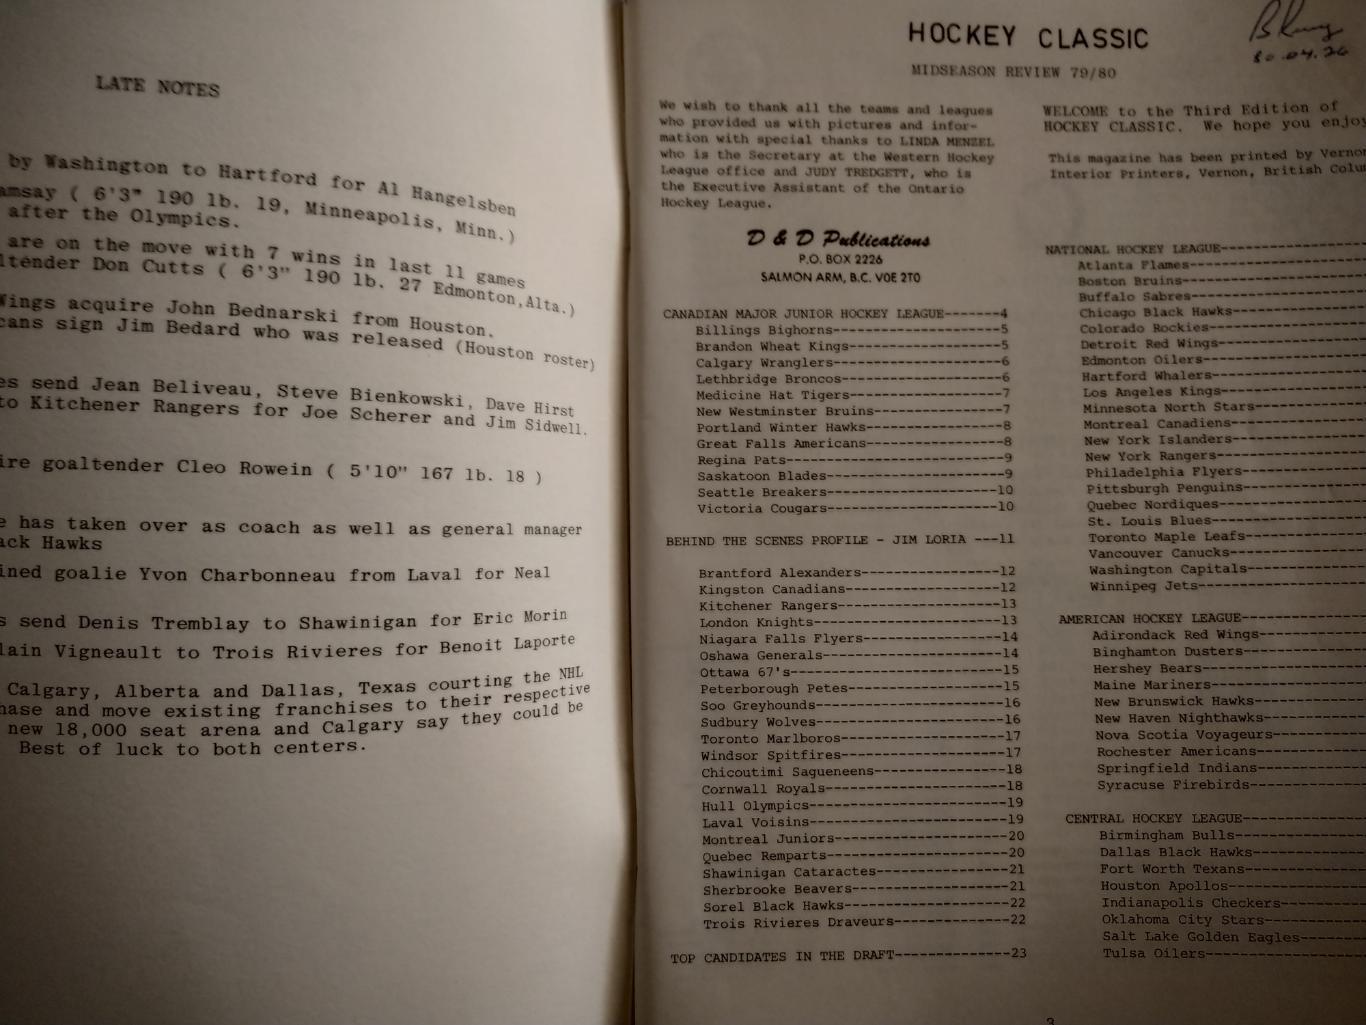 ХОККЕЙ СПРАВОЧНИК ЕЖЕГОДНИК НХЛ КЛАССИК 1979-80 HOCKEY CLASSIC MIDSEASON REVIEW 1